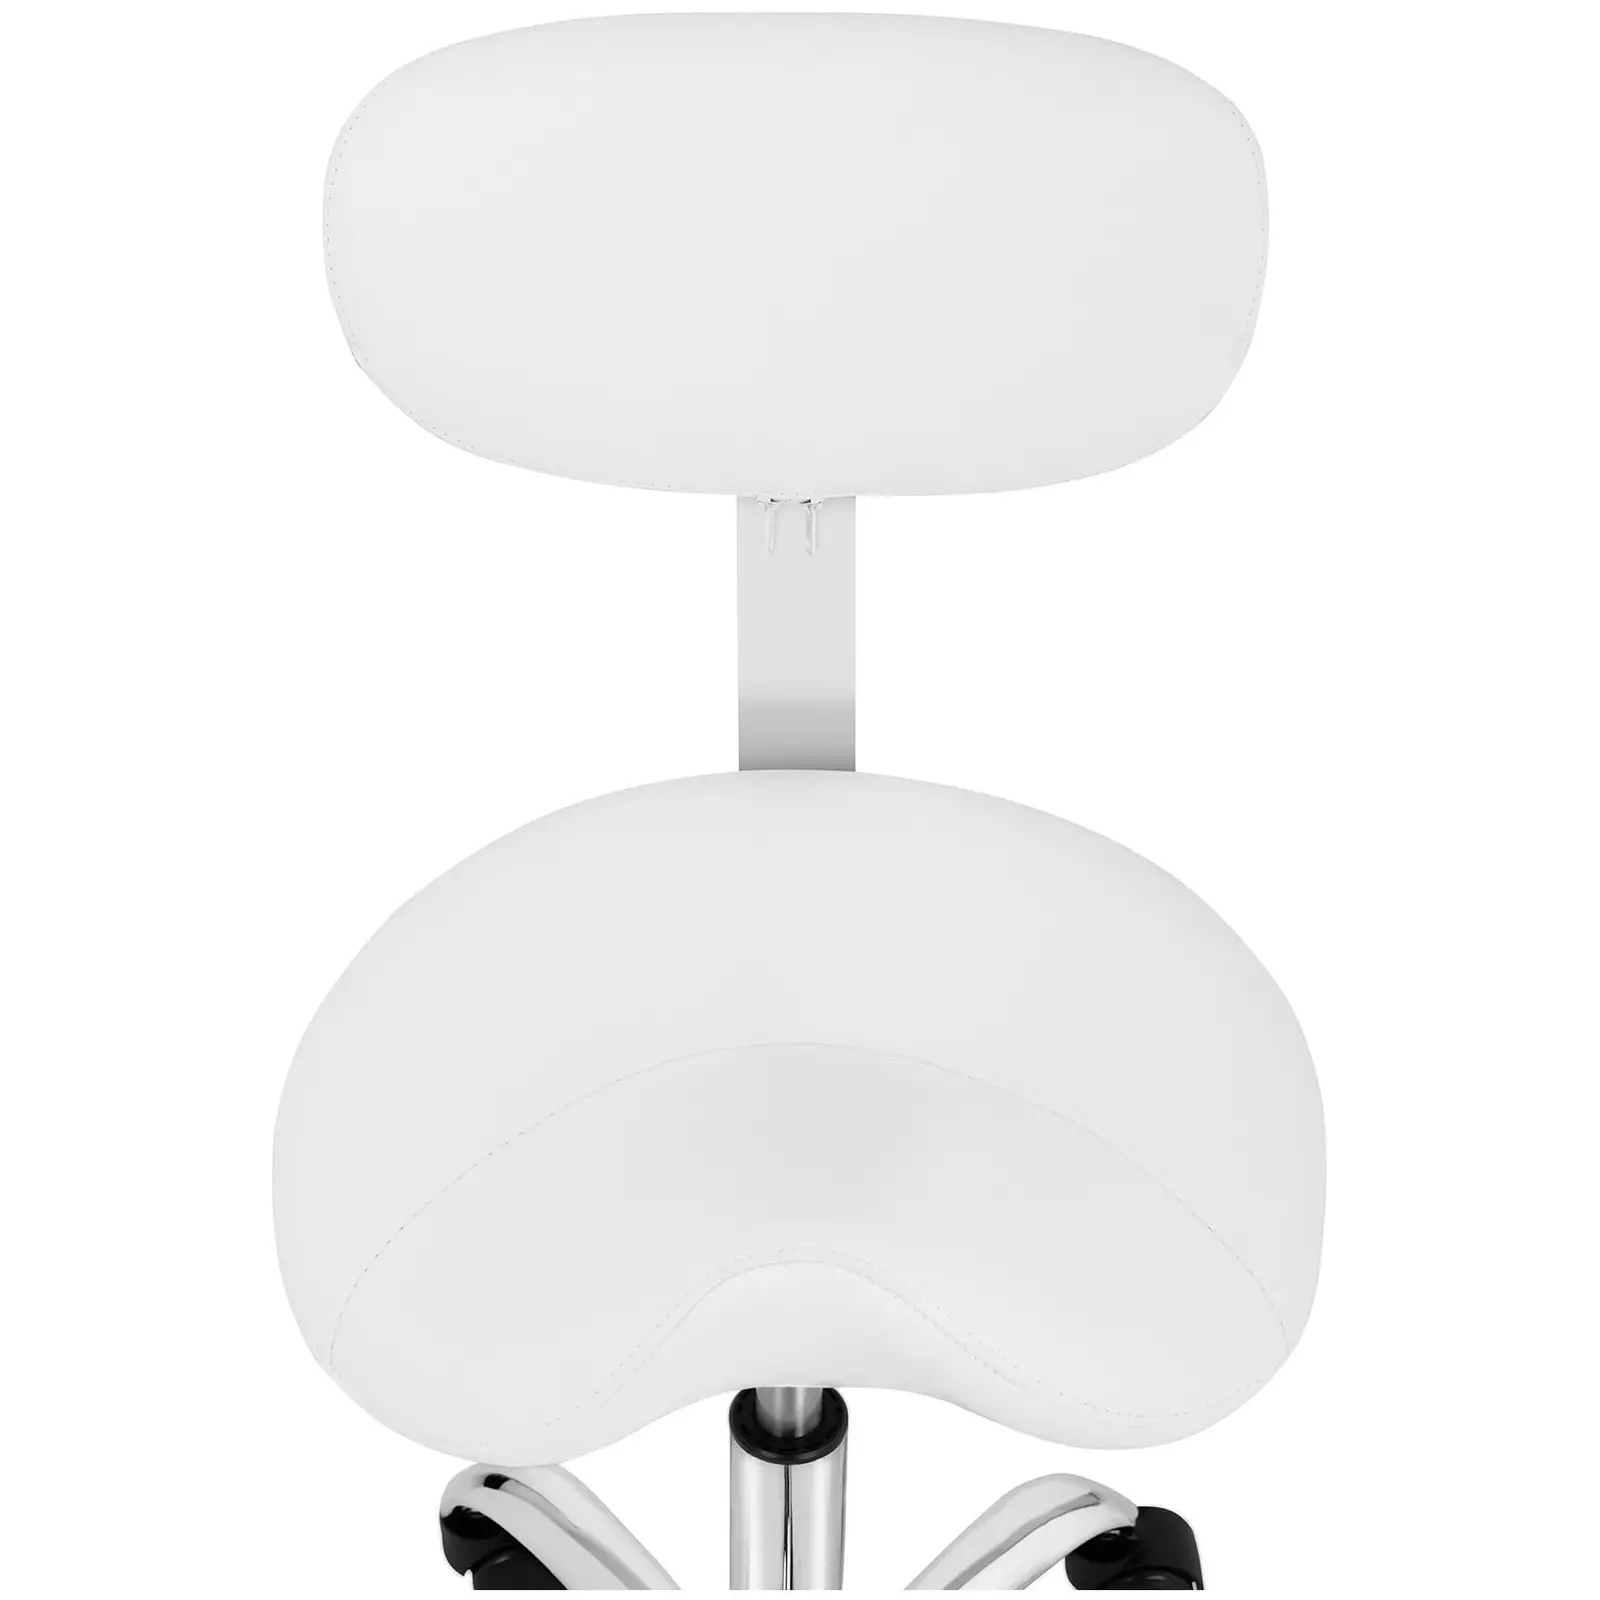 Sedlová židle - 600–800 mm - 150 kg - White